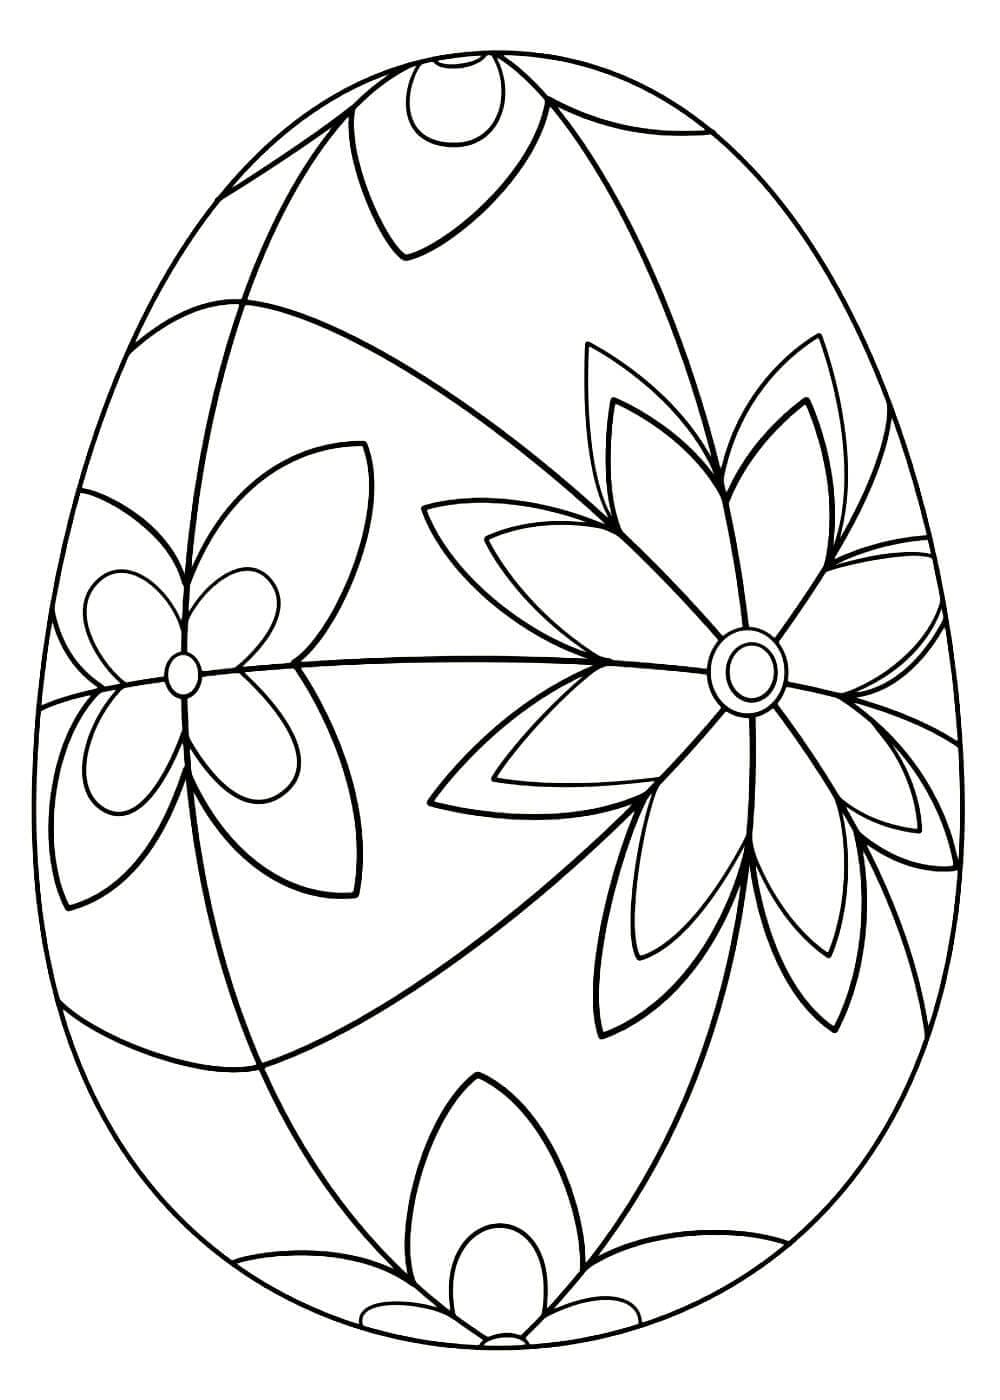 Яйцо Писанка раскраска для детей